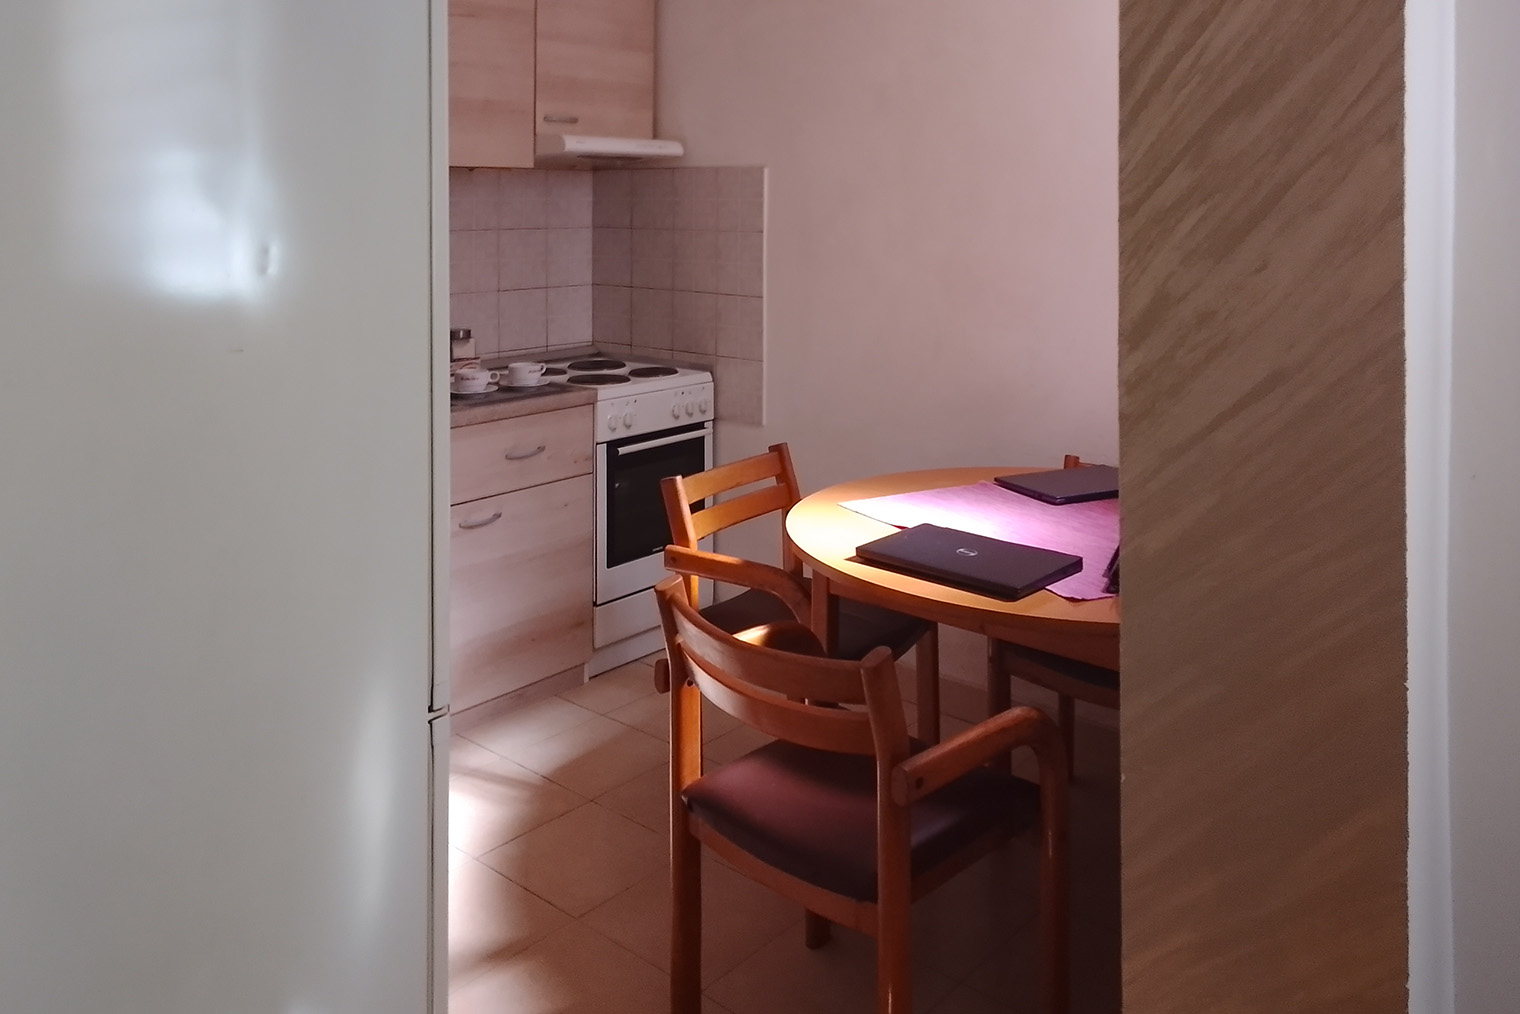 Первые две недели в Белграде мы снимали временное жилье. Это была классическая двушка с маленькой кухней